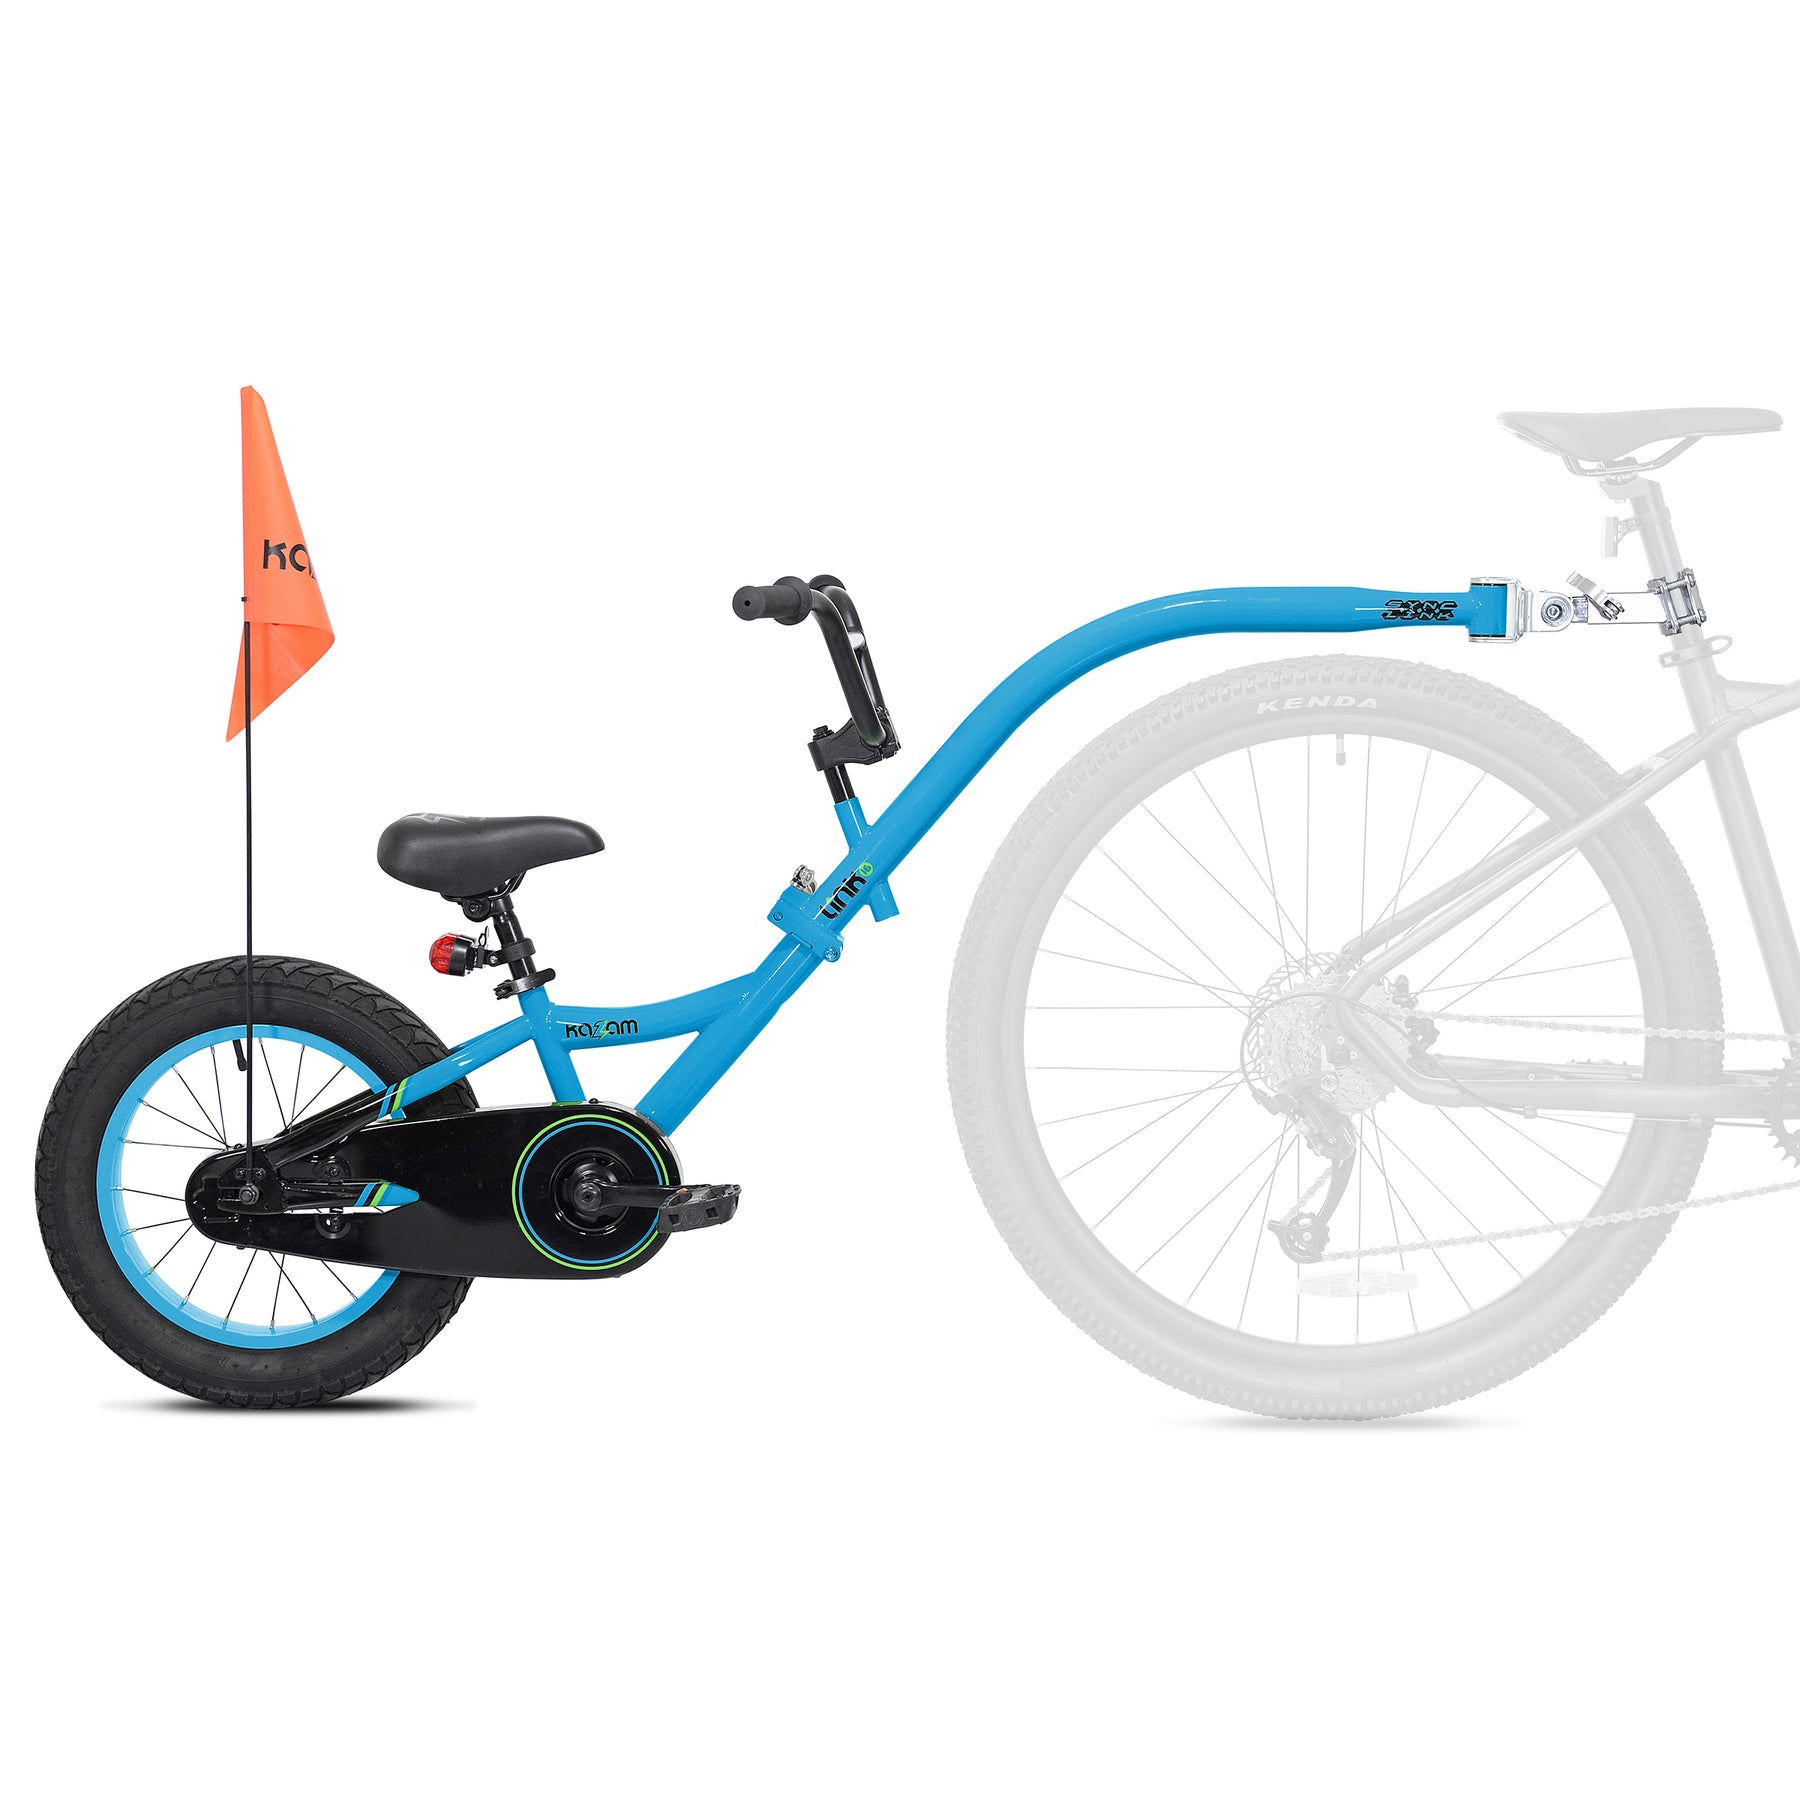 16" Kazam Link | Trailer Bike For Kids Ages 4+